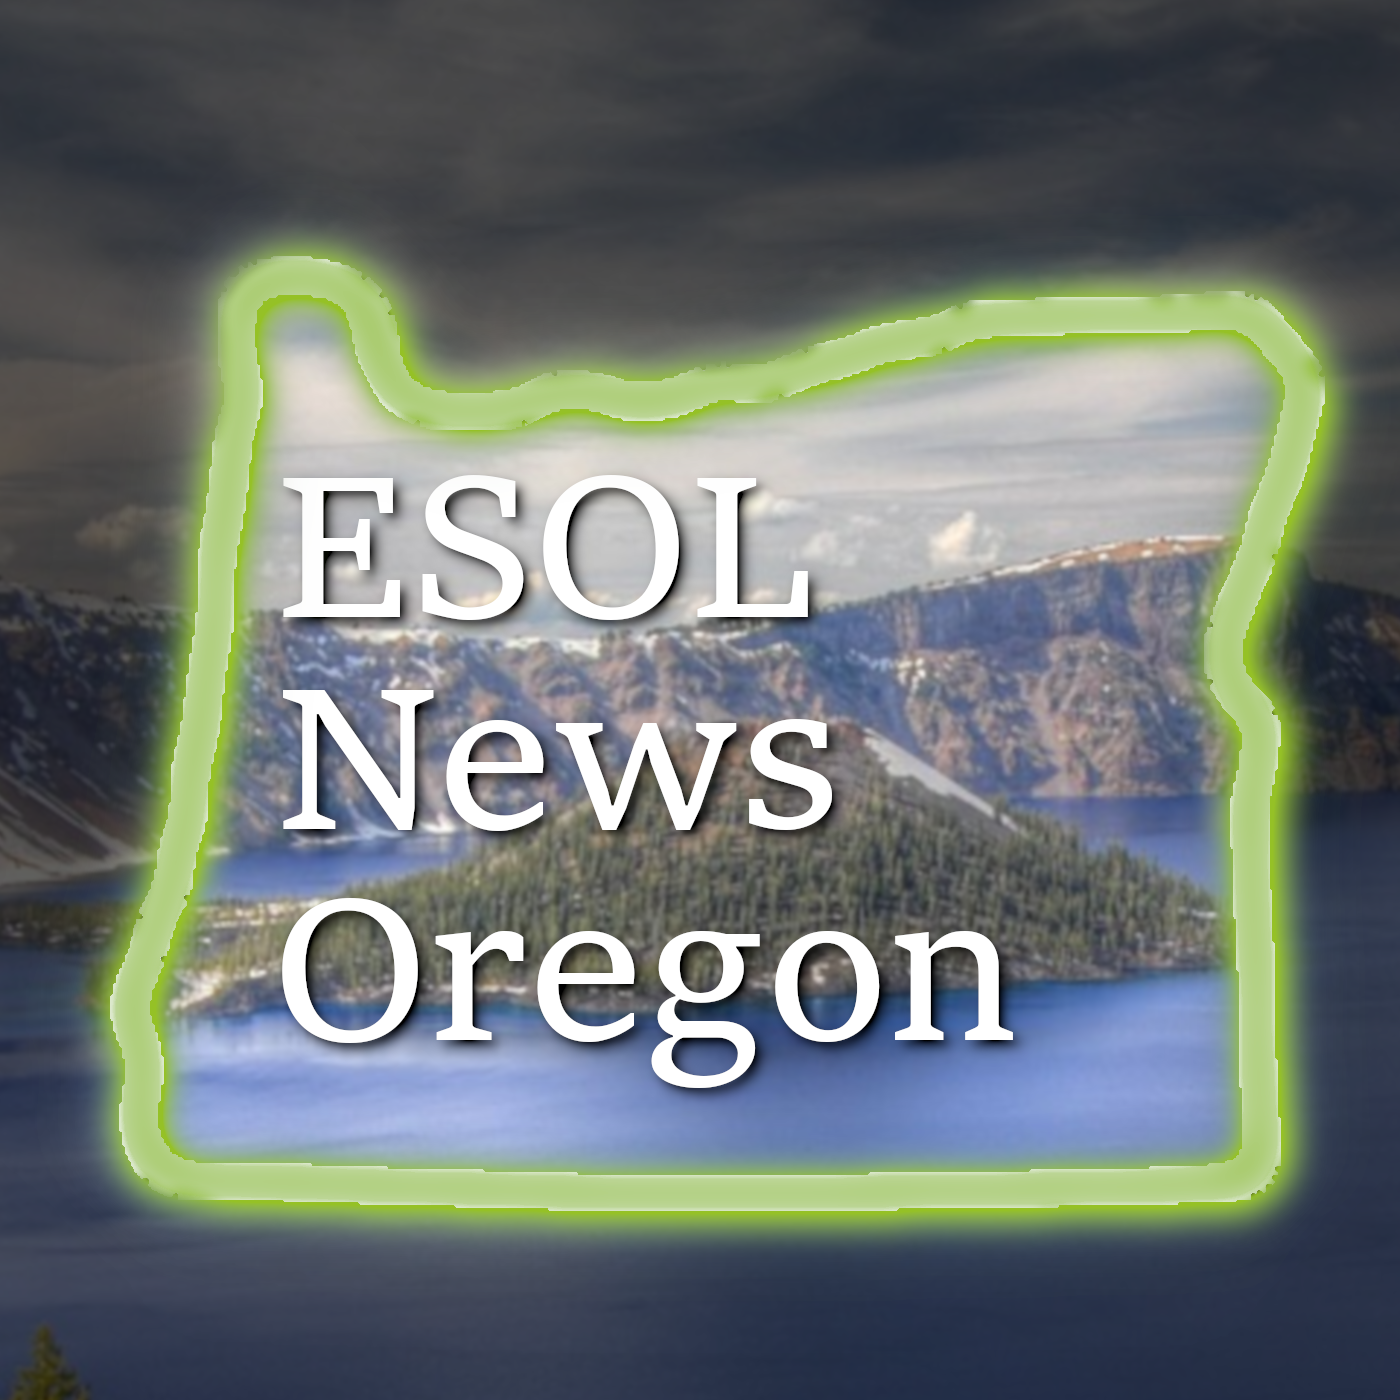 ESOL News Oregon Logo